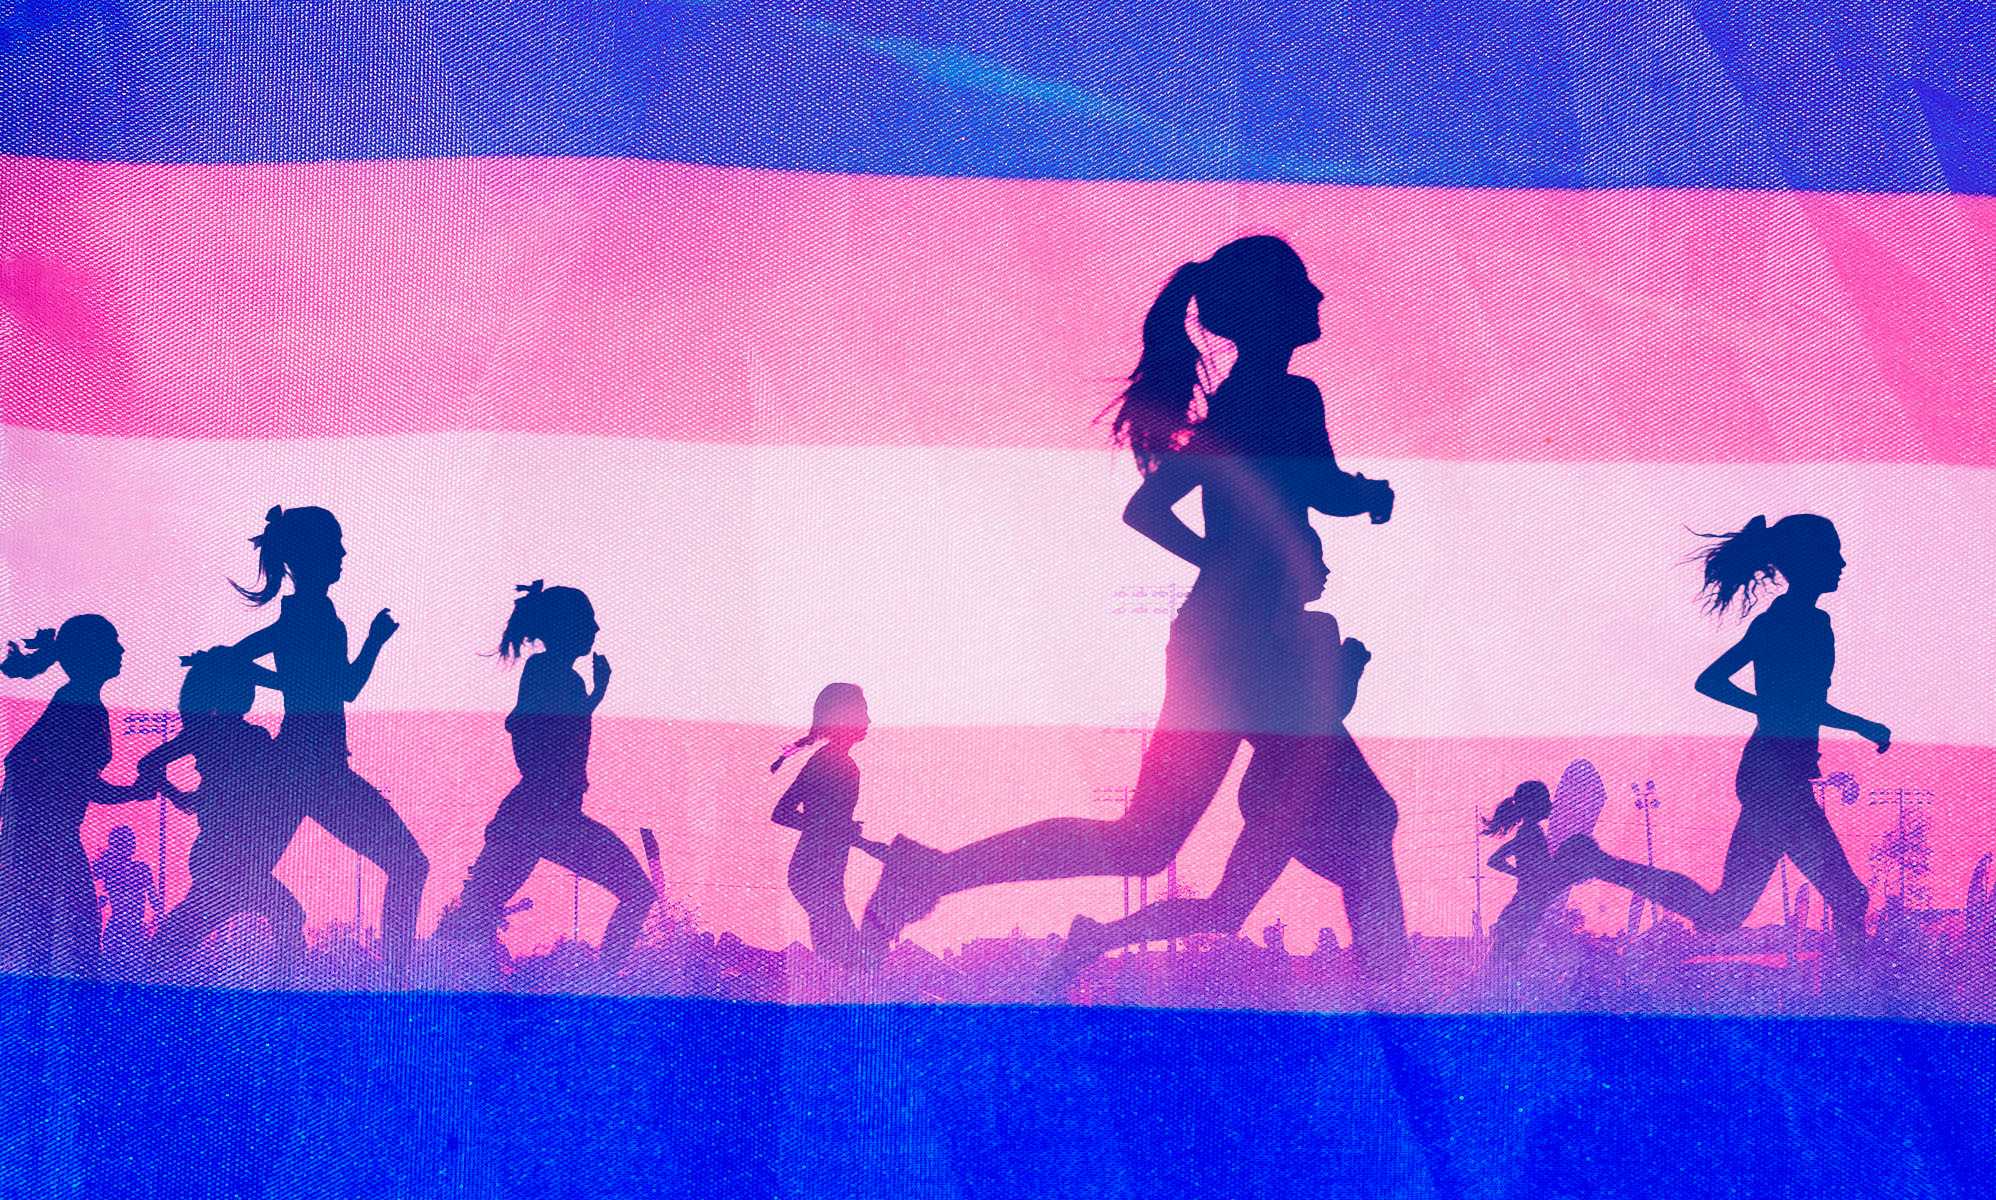 Según un estudio del Comité Olímpico Internacional, los deportistas trans podrían estar en desventaja física en algunos aspectos